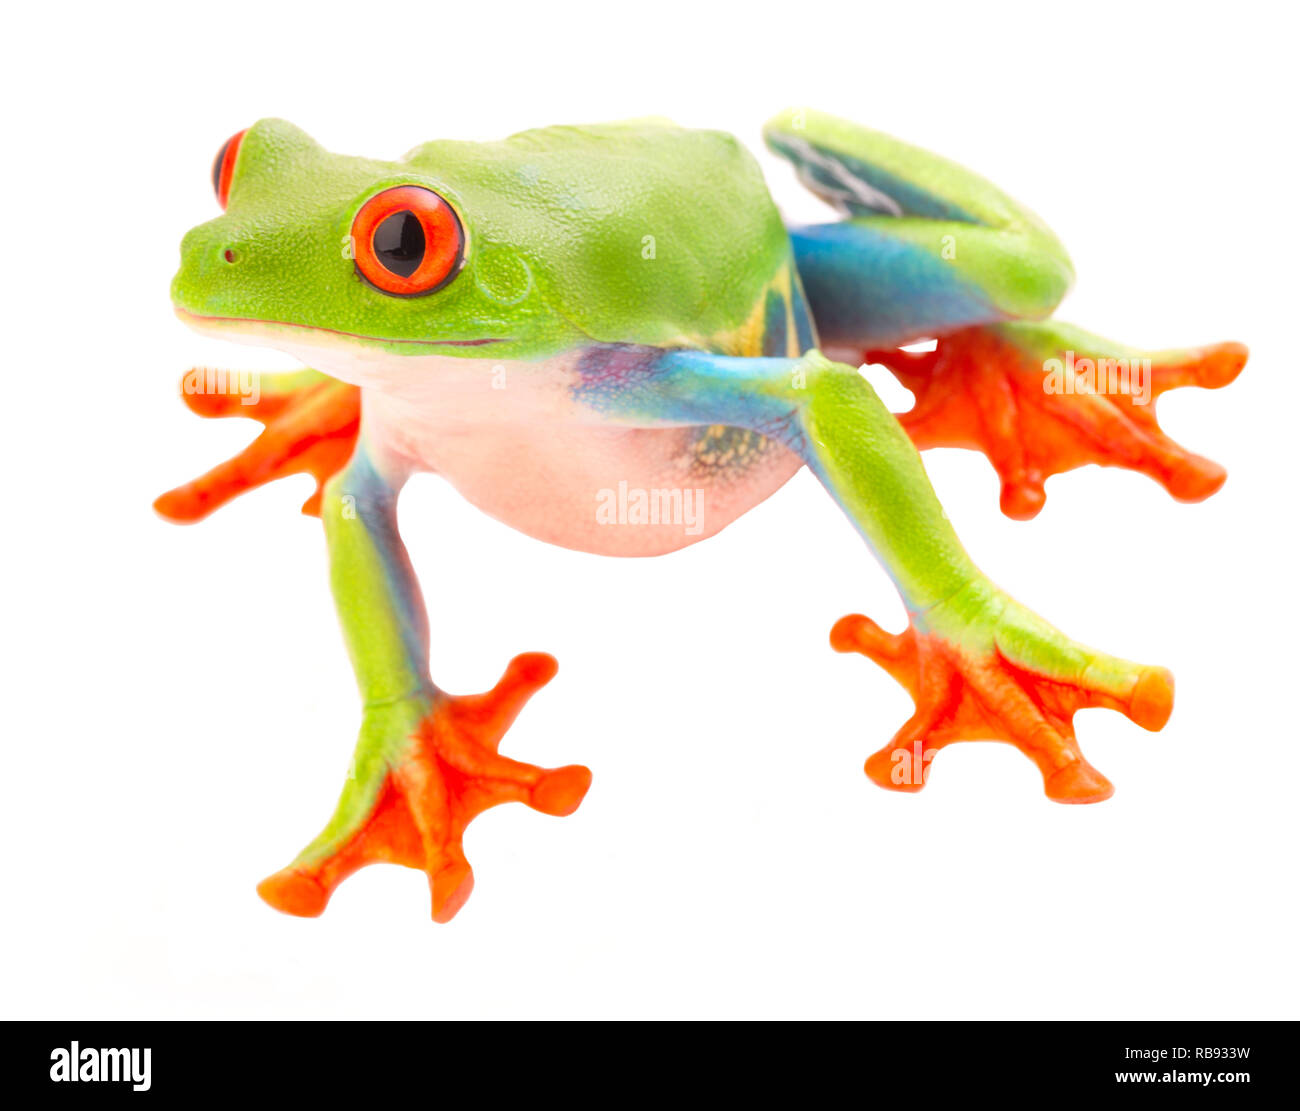 Red Eyed Tree Frog mit großen Augen an. Einen schönen Regenwald Tier aus dem Dschungel von Costa Rica und Panama isoliert auf einem weißen Hintergrund. Stockfoto